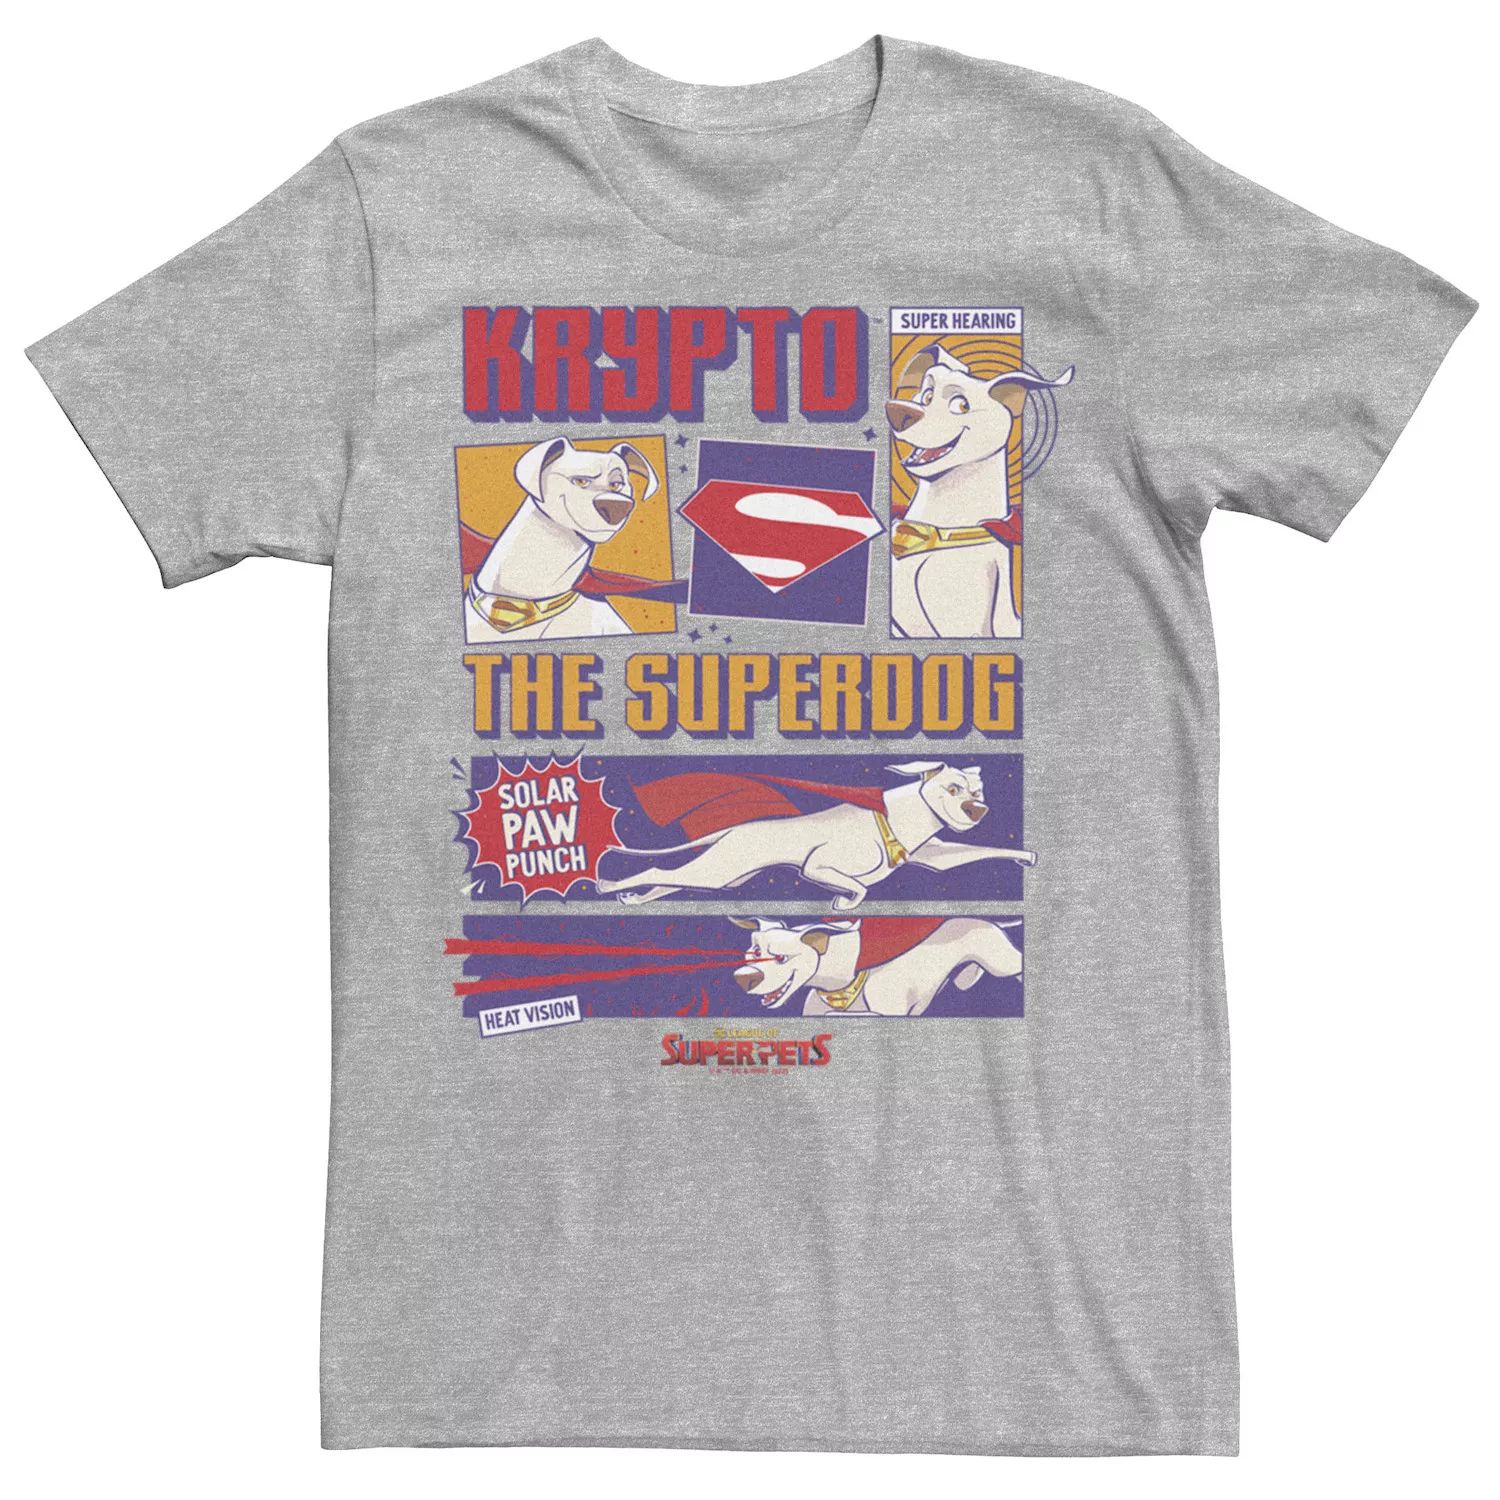 Мужская футболка DC Super Pets DC League Of Super Pets с криптопанелями Licensed Character